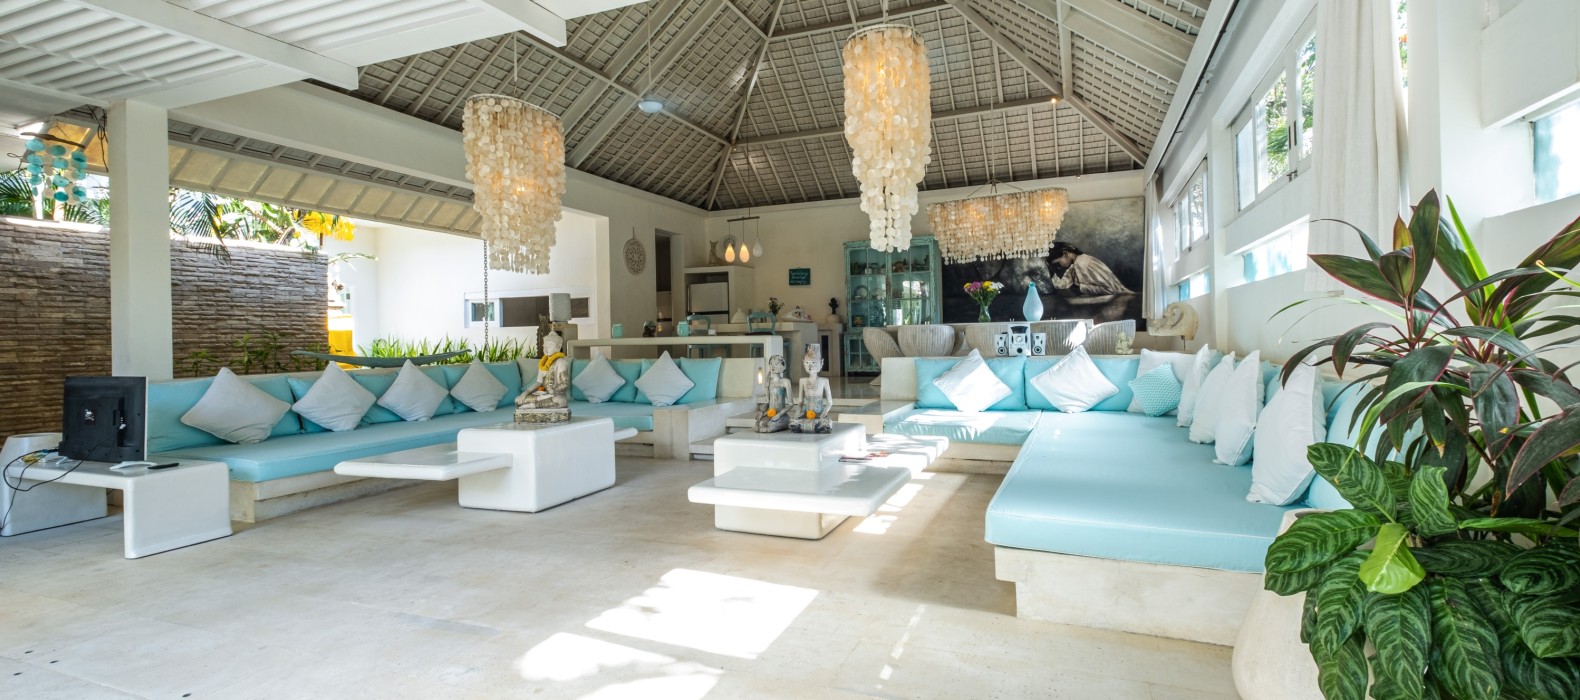 Living room of Villa Serentiy in Bali